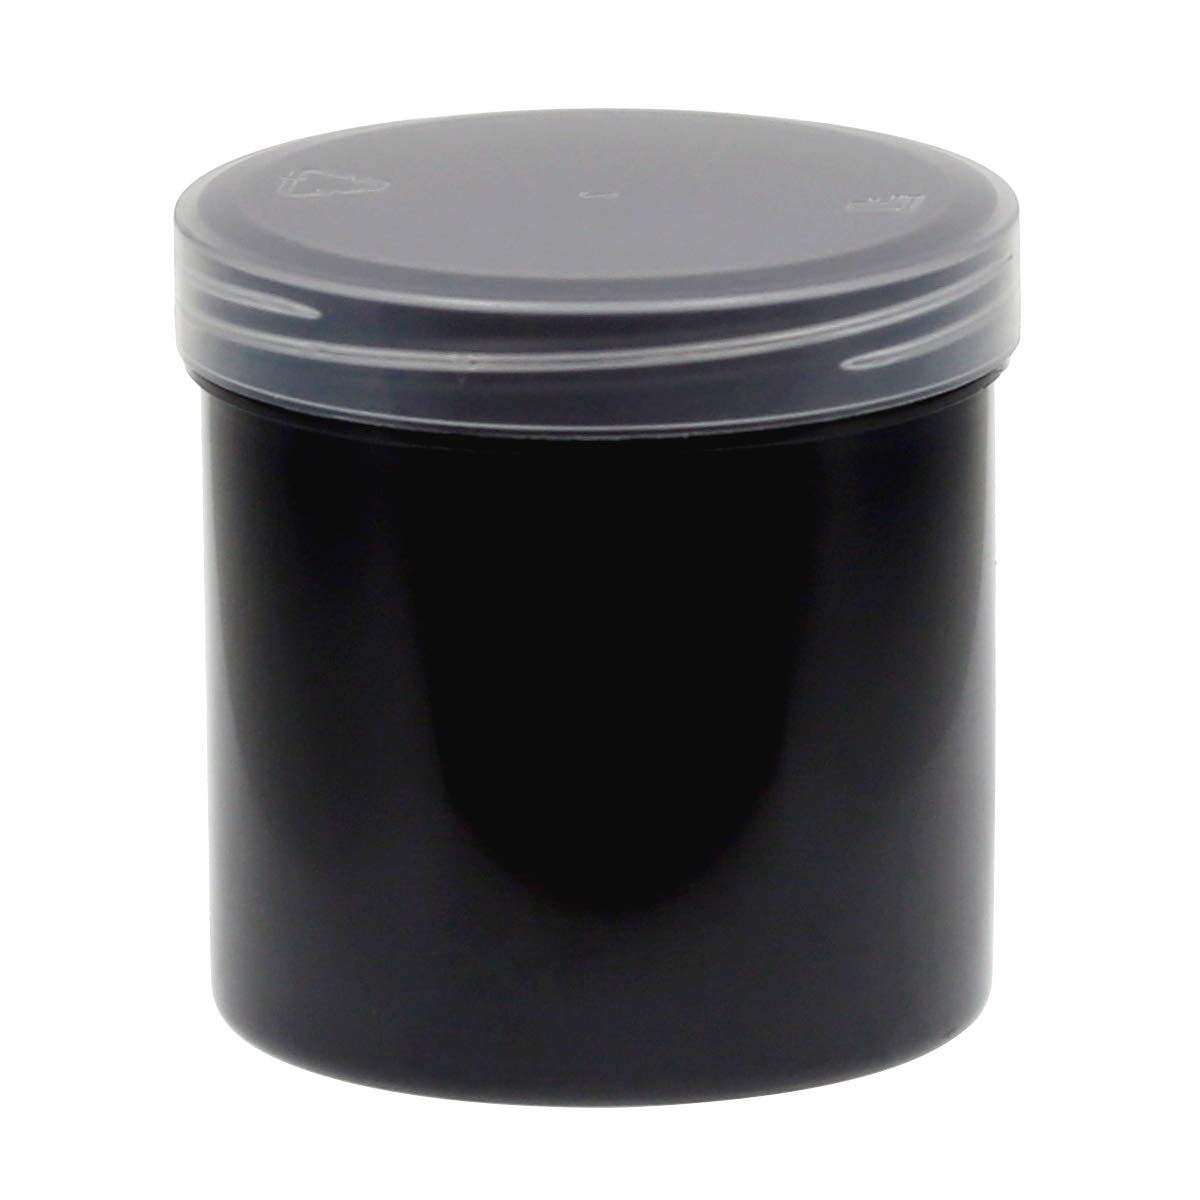 125ml Probendosen Schraubdeckeldosen Schraubdosen Cremedosen, Anzahl:50 Stück, Farbe:DoDe schwarz/transparent